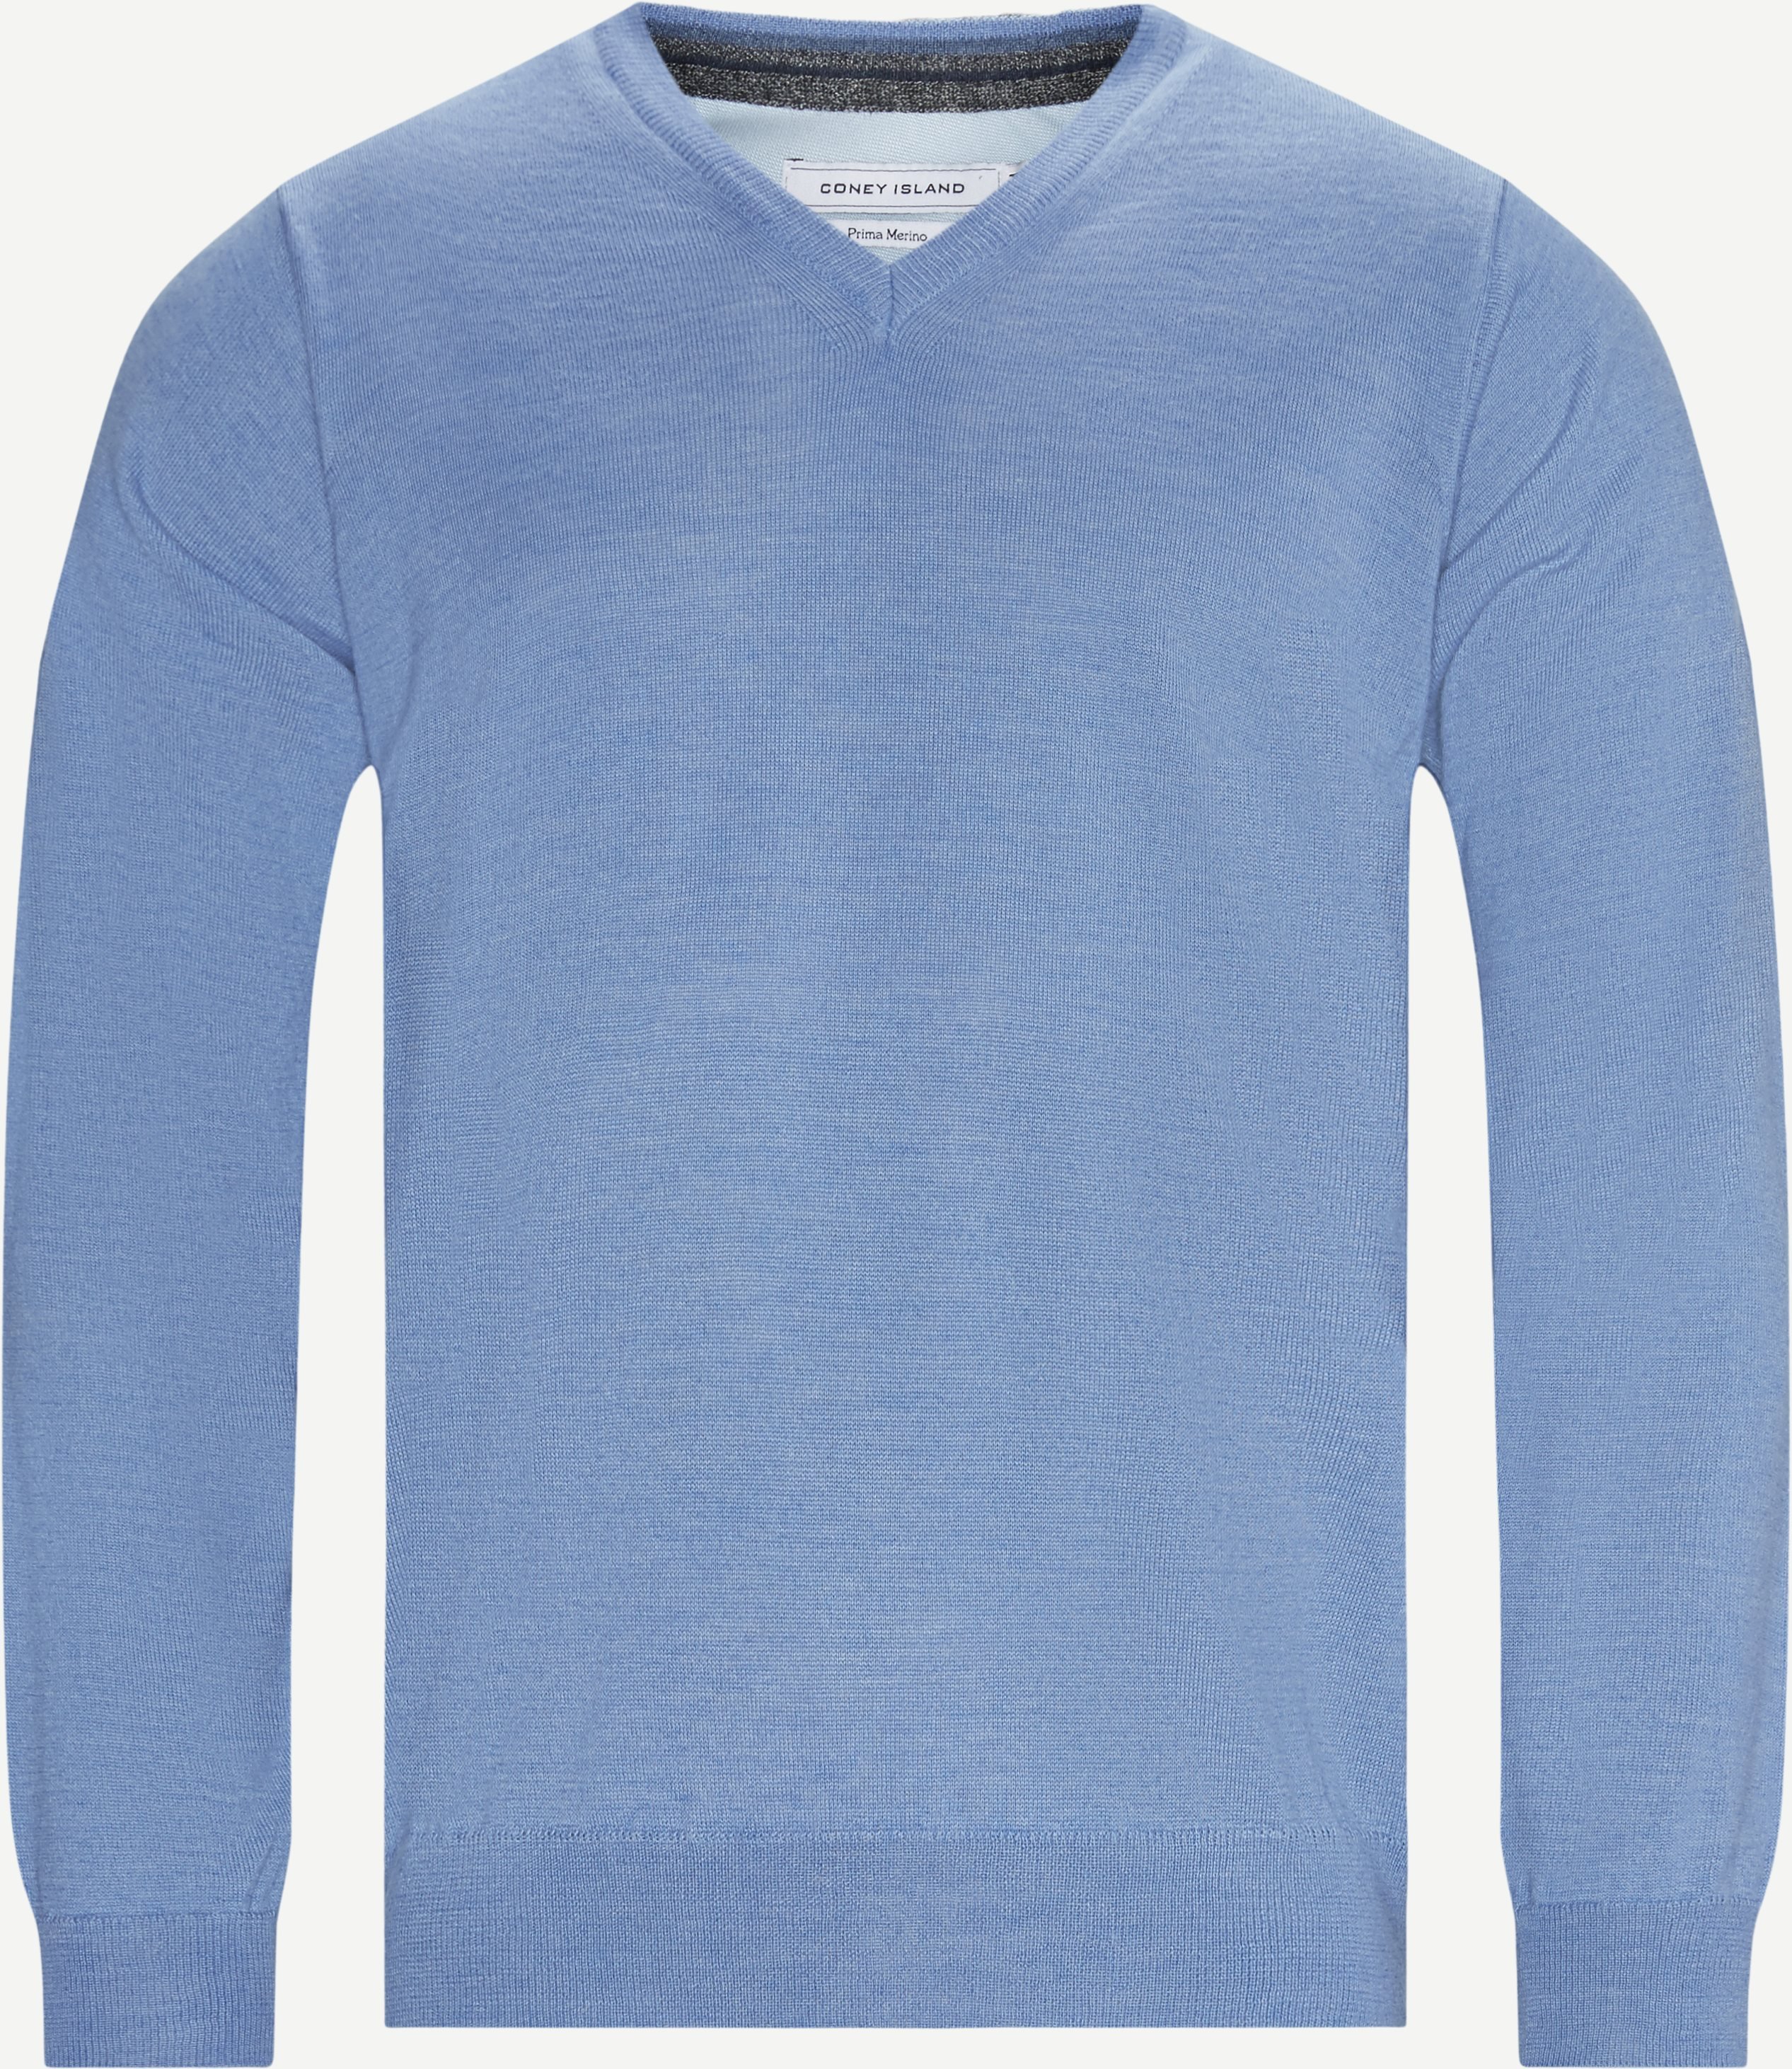 Salina Merino V-neck Knit Sweater - Knitwear - Regular fit - Blue